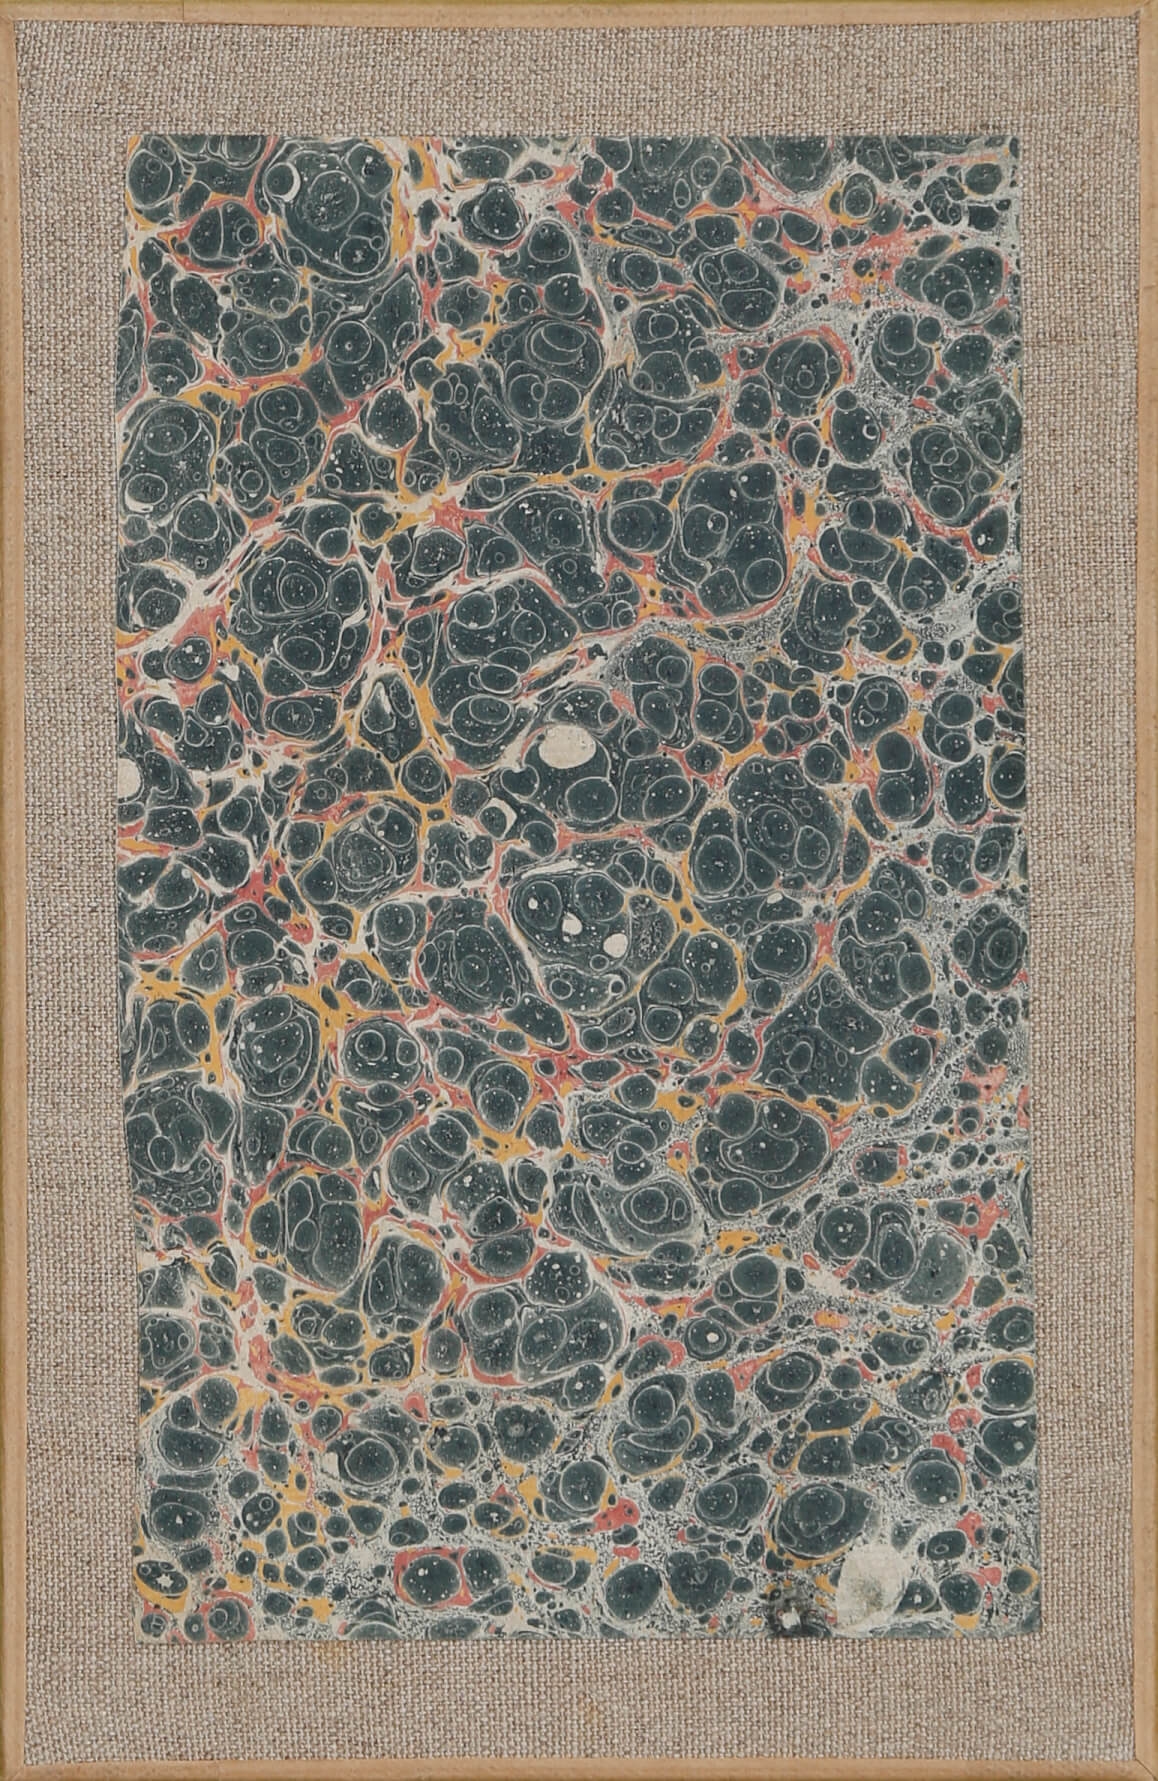 Papier choisi by Bernard Réquichot, 1959